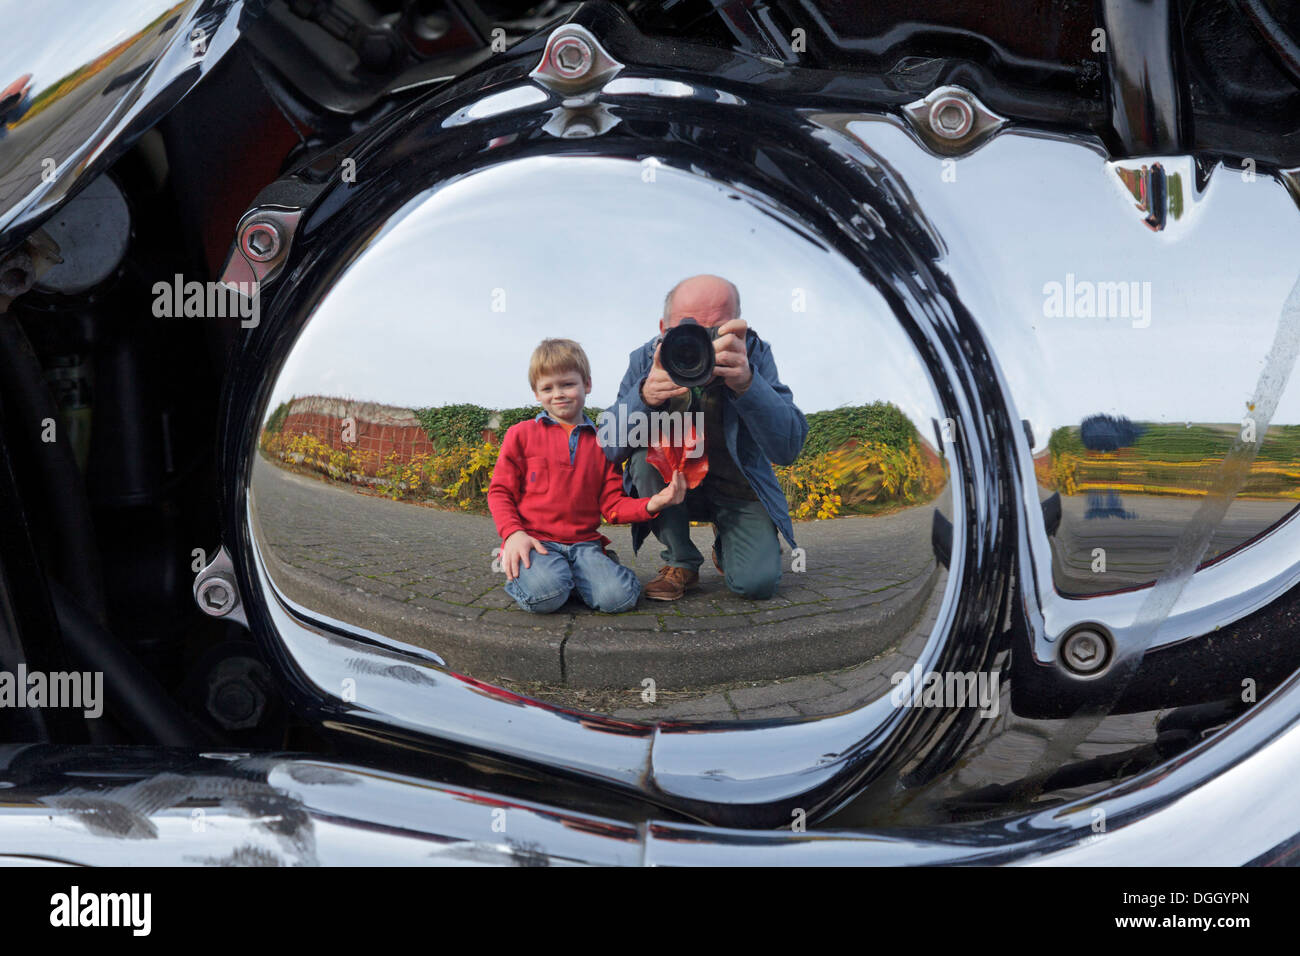 Image miroir d'un garçon et un homme, moto Banque D'Images